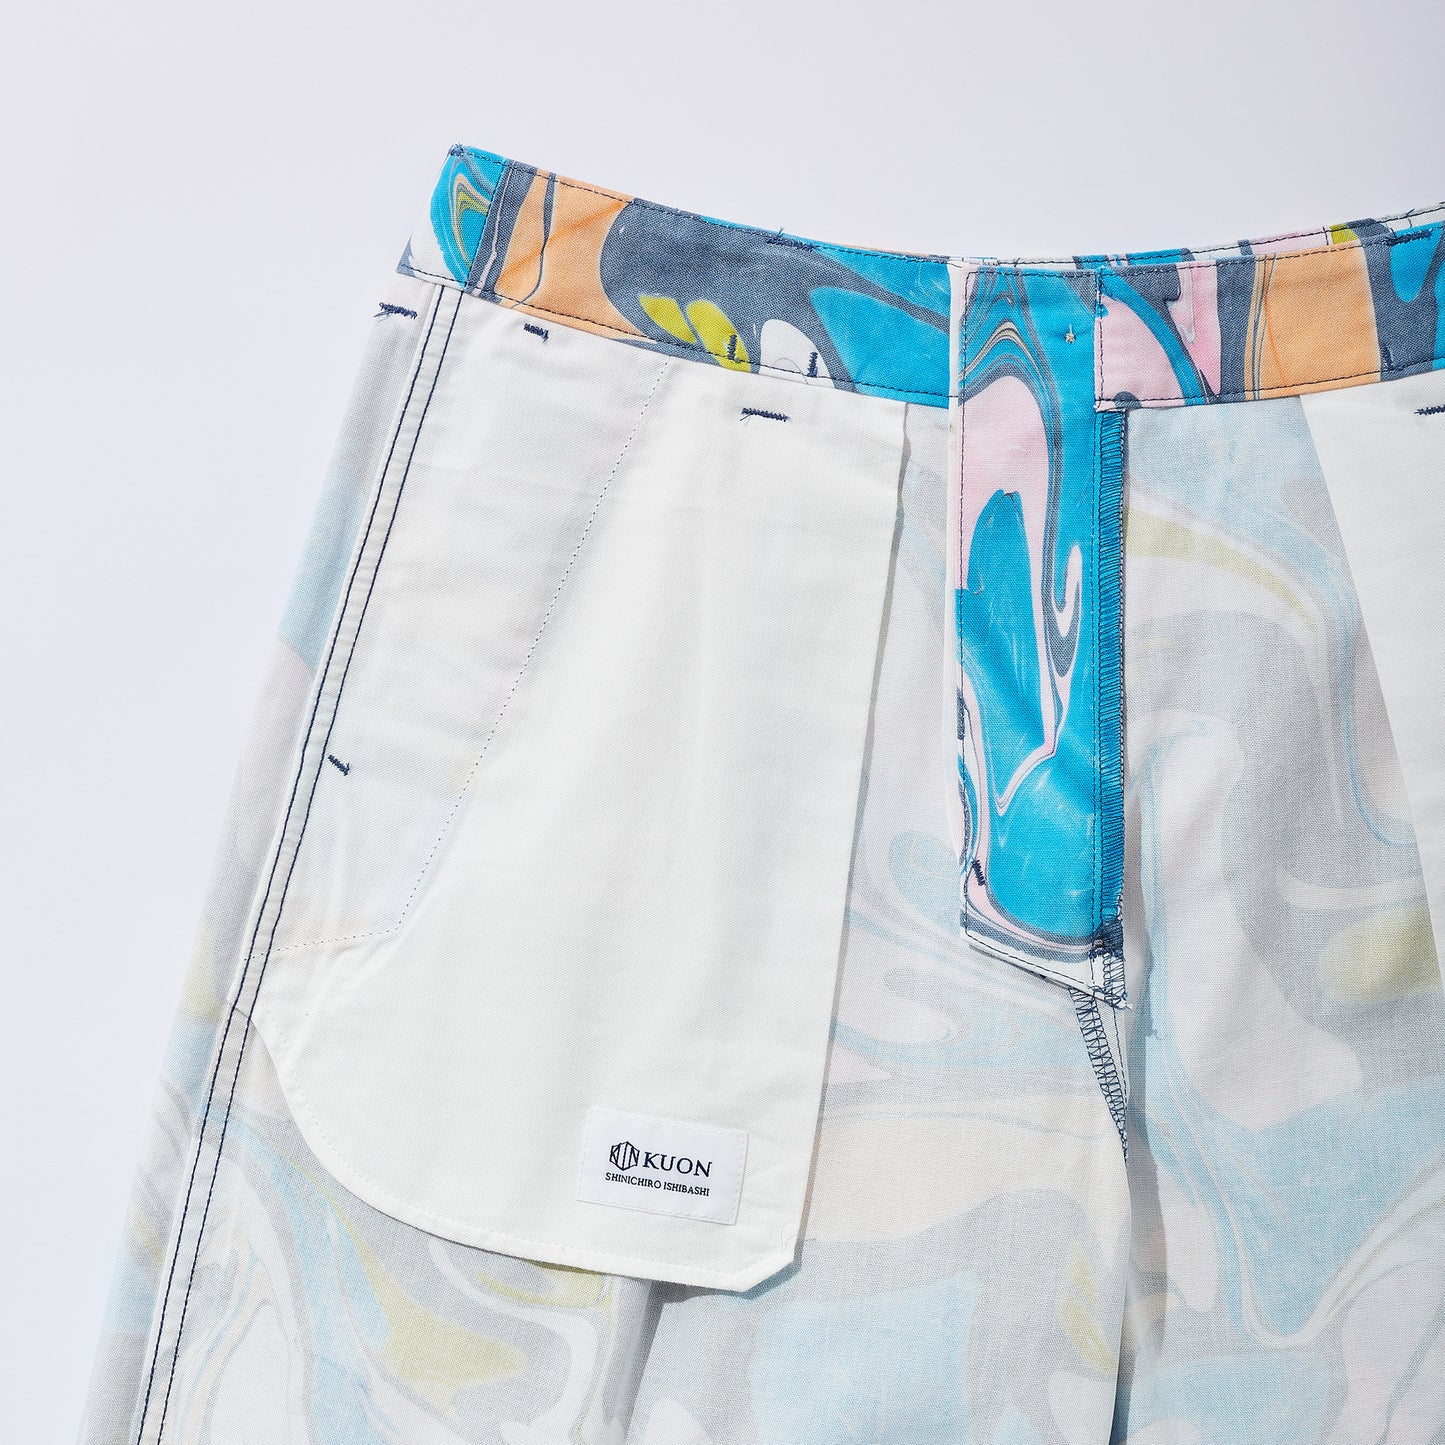 Suminagashi Printed Wide Shorts